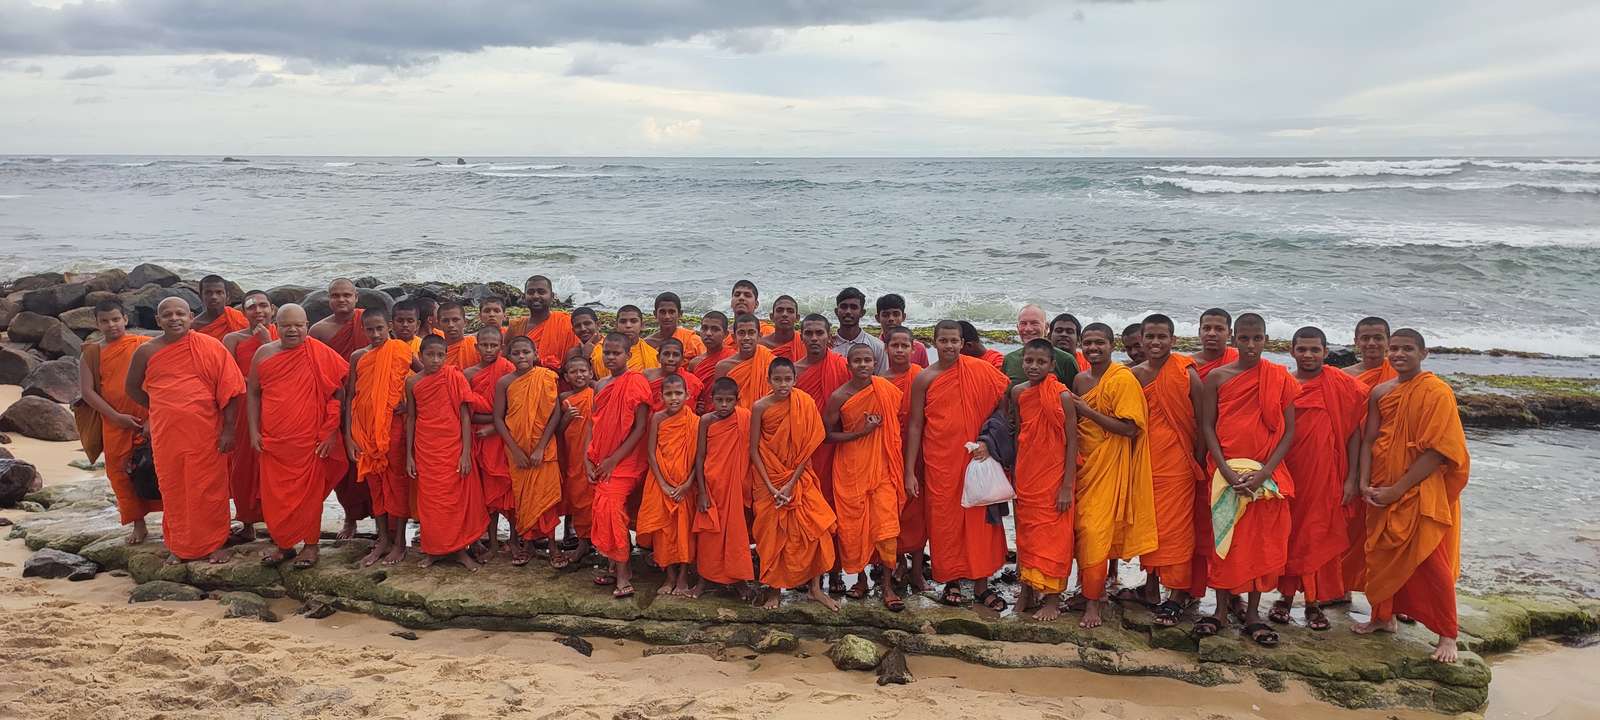 Monges na praia puzzle online